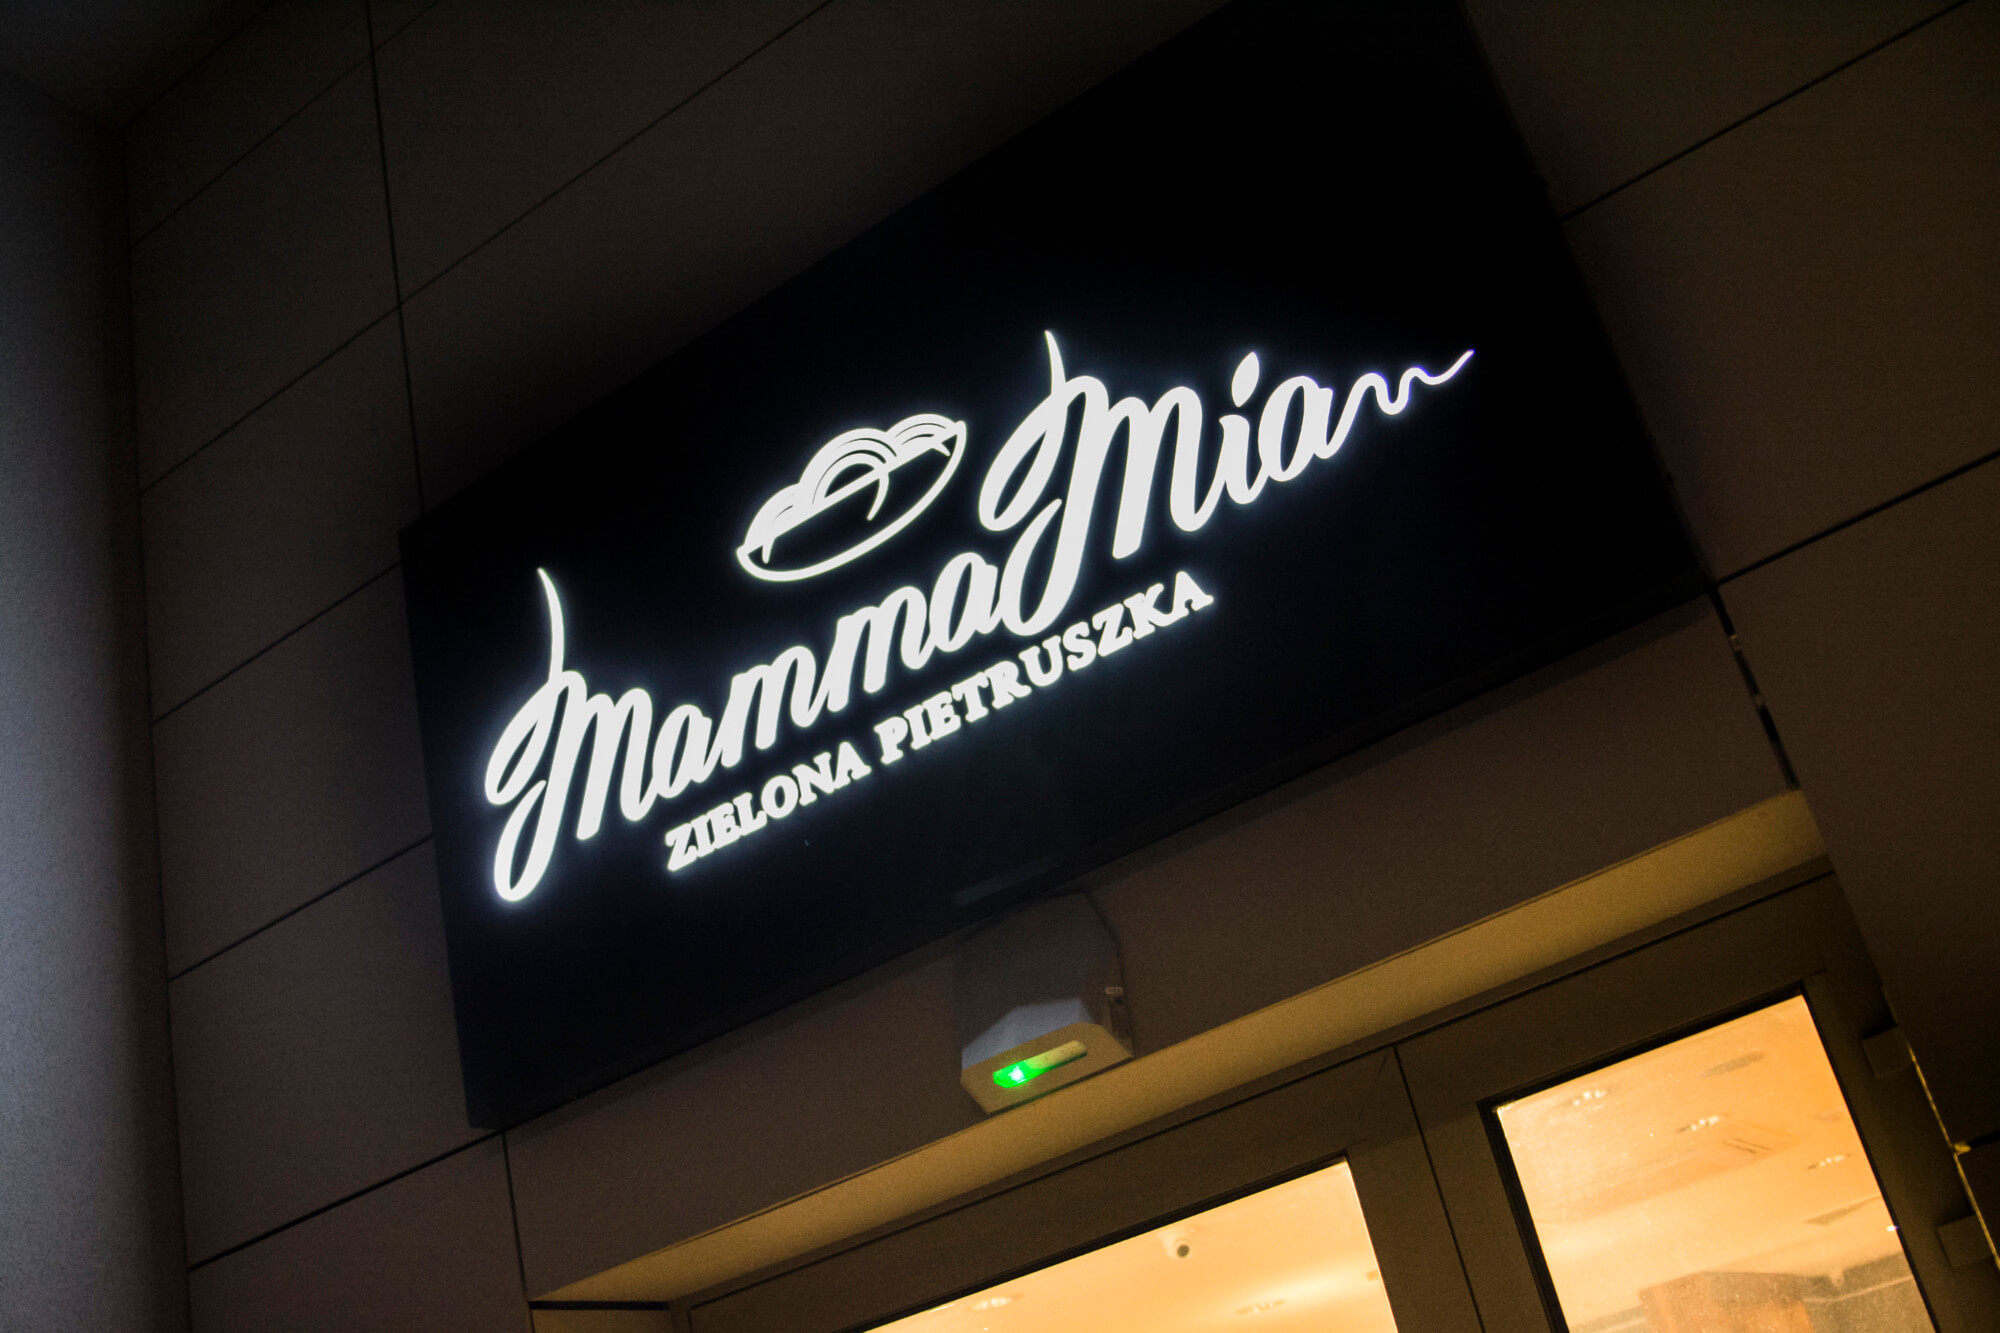 Mamma Mia - Mamma Mia - kaseton świetlny reklamowy umieszczony nad wejściem